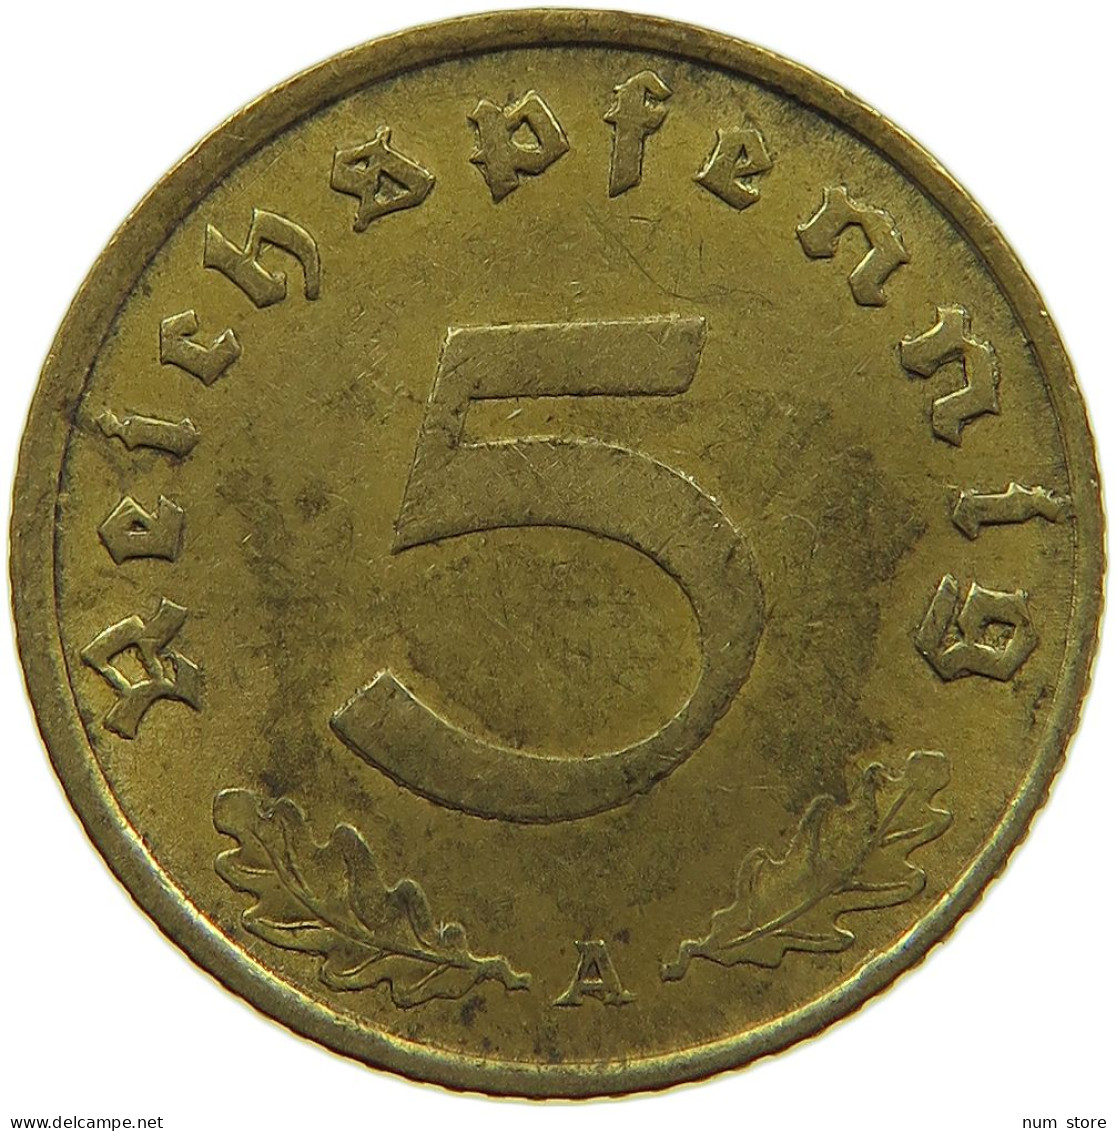 GERMANY 5 REICHSPFENNIG 1937 A DEZENTRIERT #s091 0625 - 5 Reichspfennig